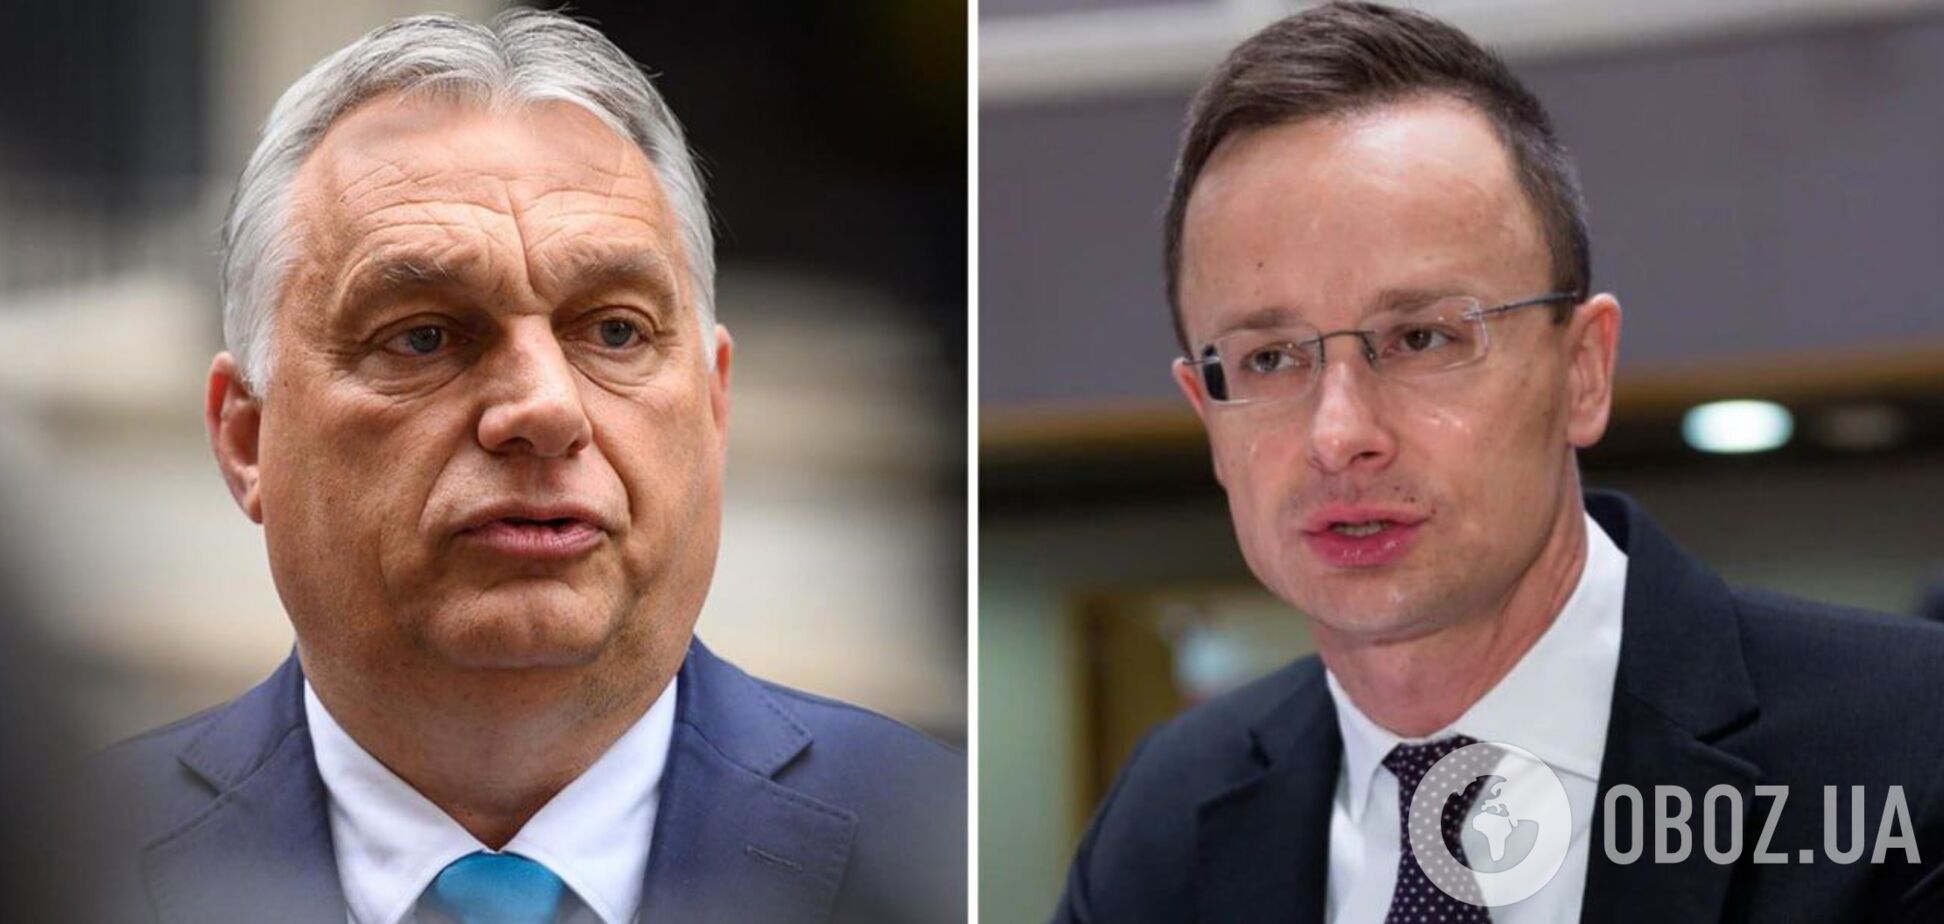 Сіярто захотів співпрацювати з РФ у галузях, де немає санкцій, а Орбан відправив листа Путіну
